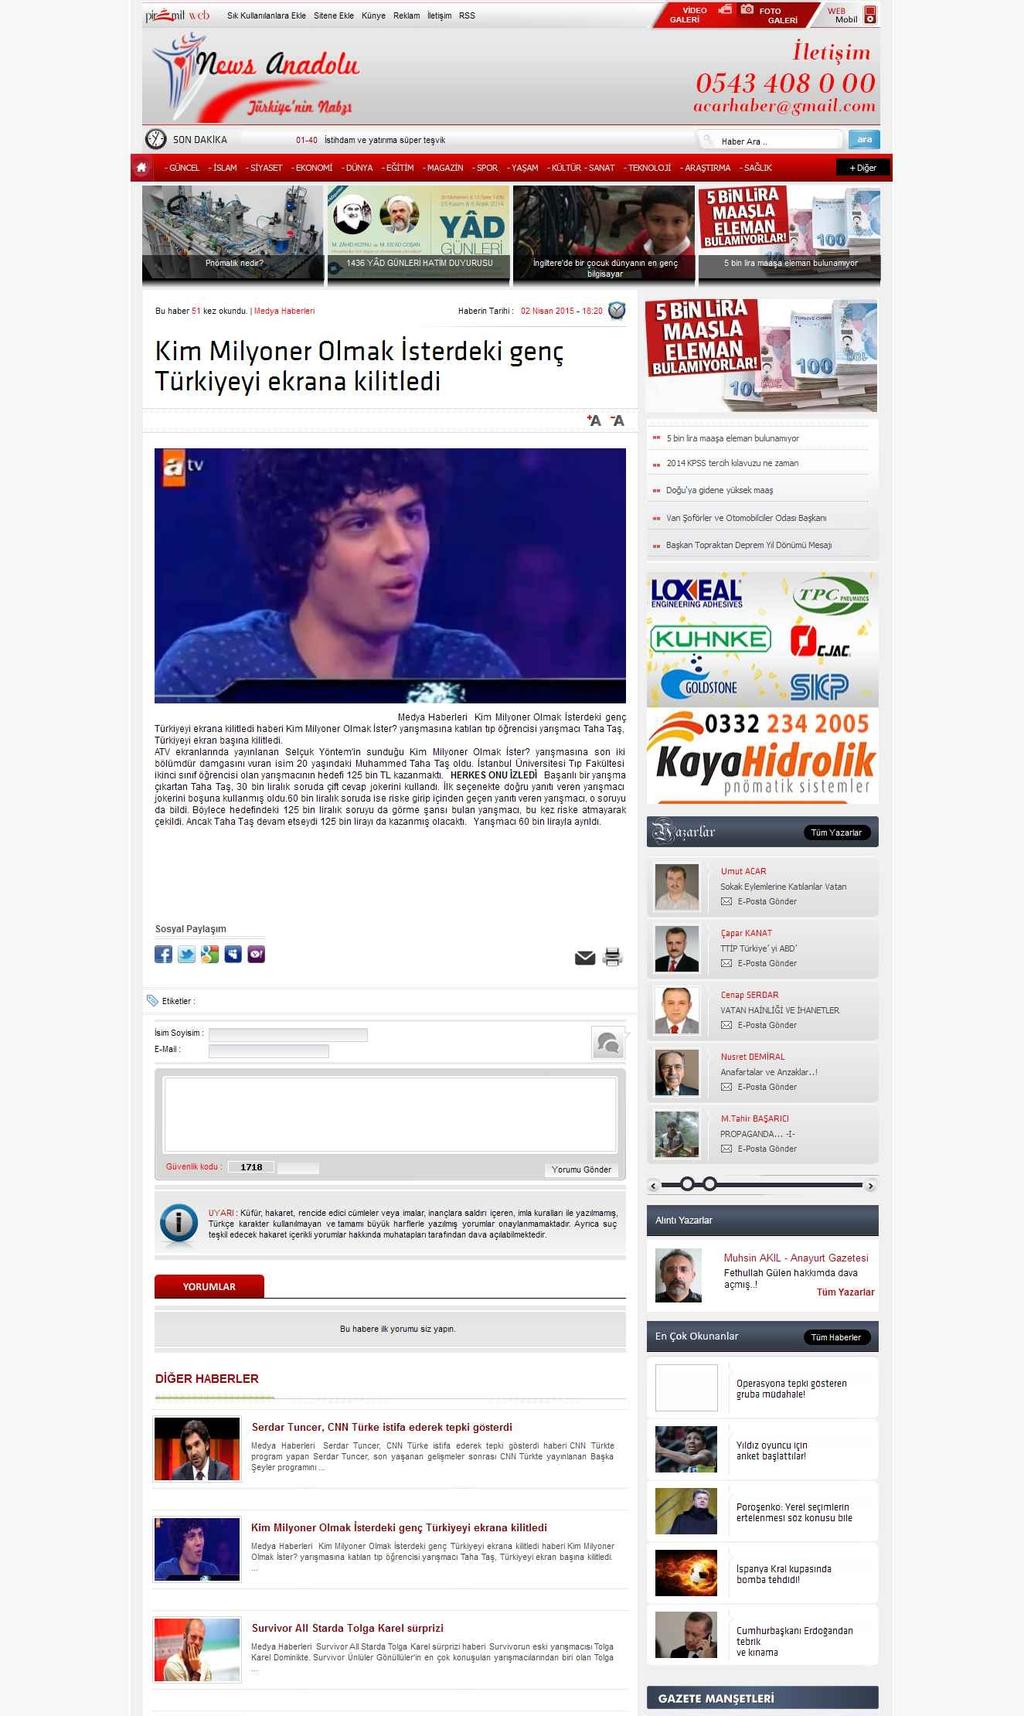 KIM MILYONER OLMAK ISTERDEKI GENÇ TÜRKIYEYI EKRANA KILITLEDI Portal : www.newsanadolu.